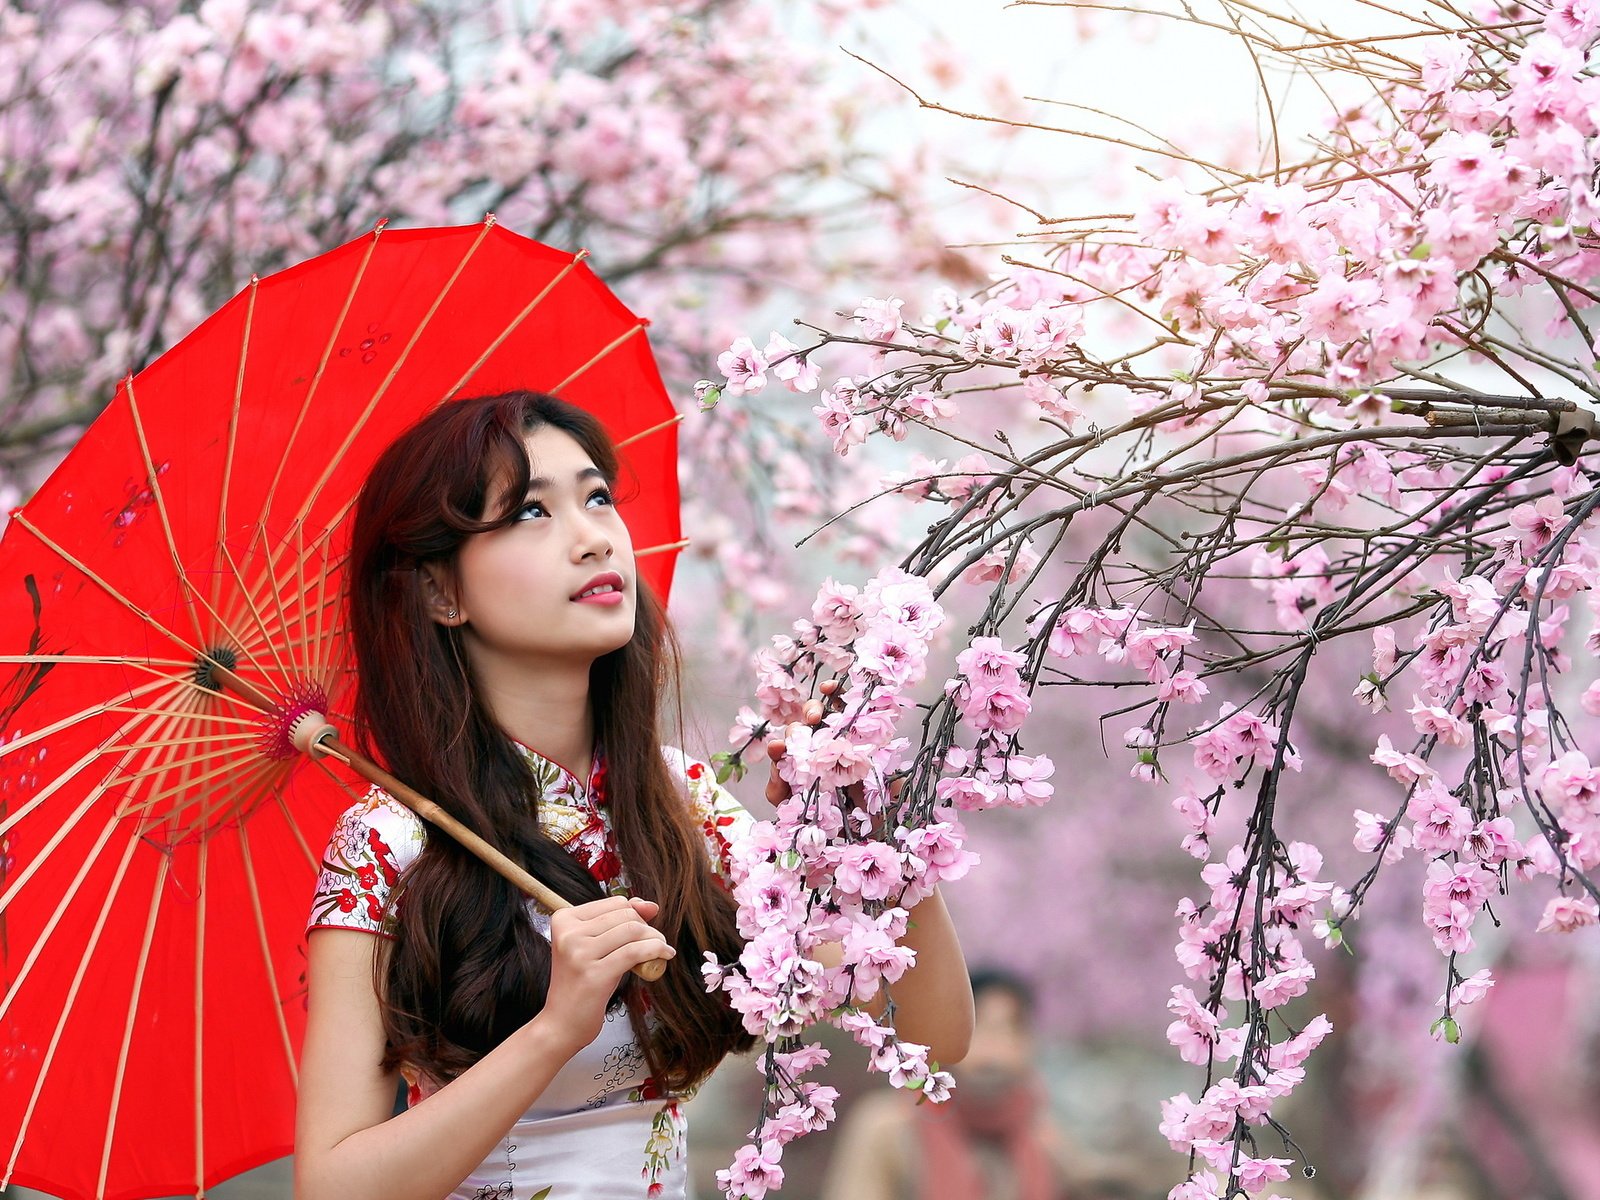 Как называют девушку в японии. Японская девушка. Японская девушка с зонтом. Девушка с японским зонтиком. Китаянка с зонтиком.